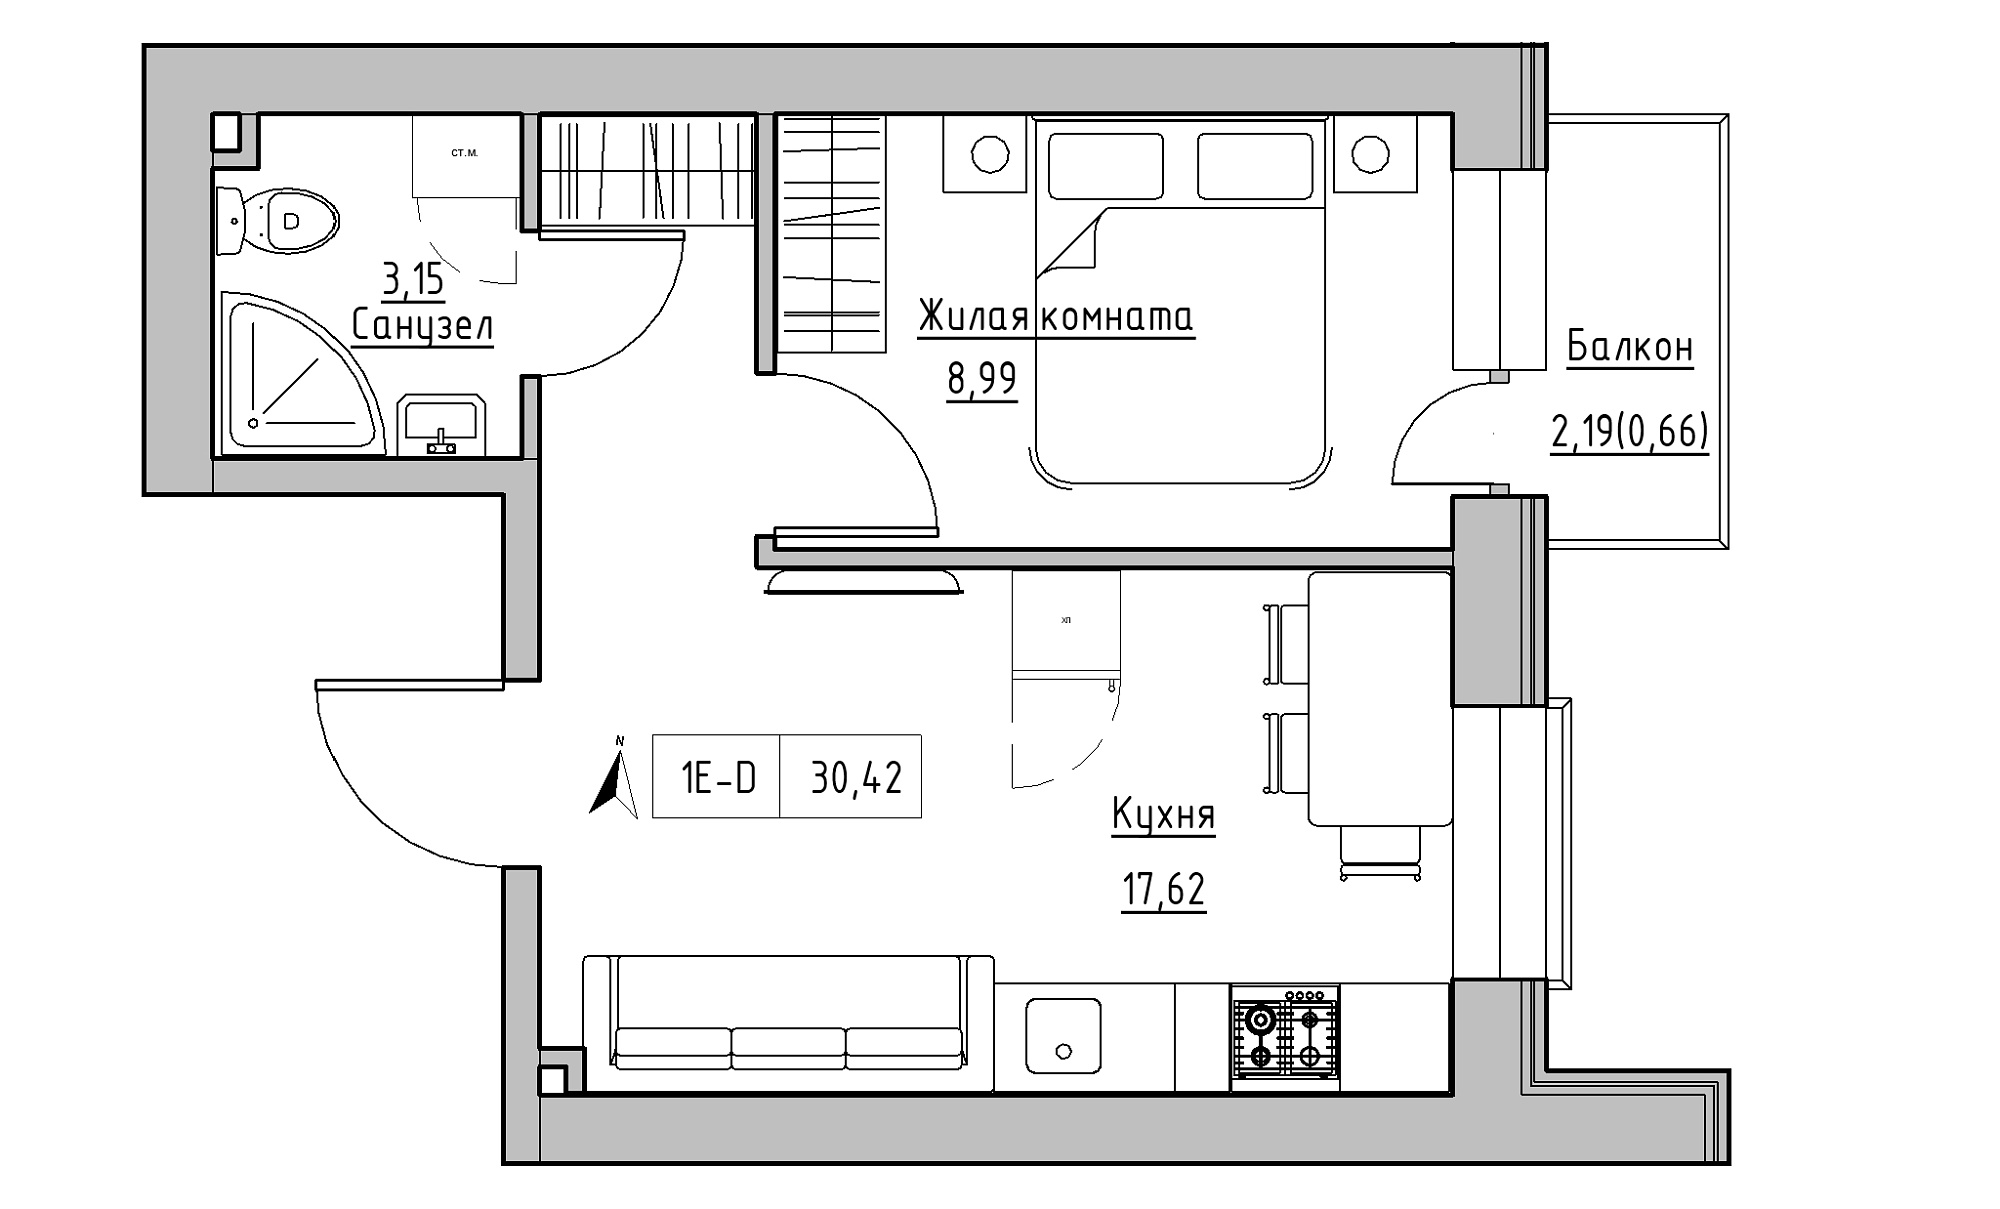 Планировка 1-к квартира площей 30.42м2, KS-016-05/0016.